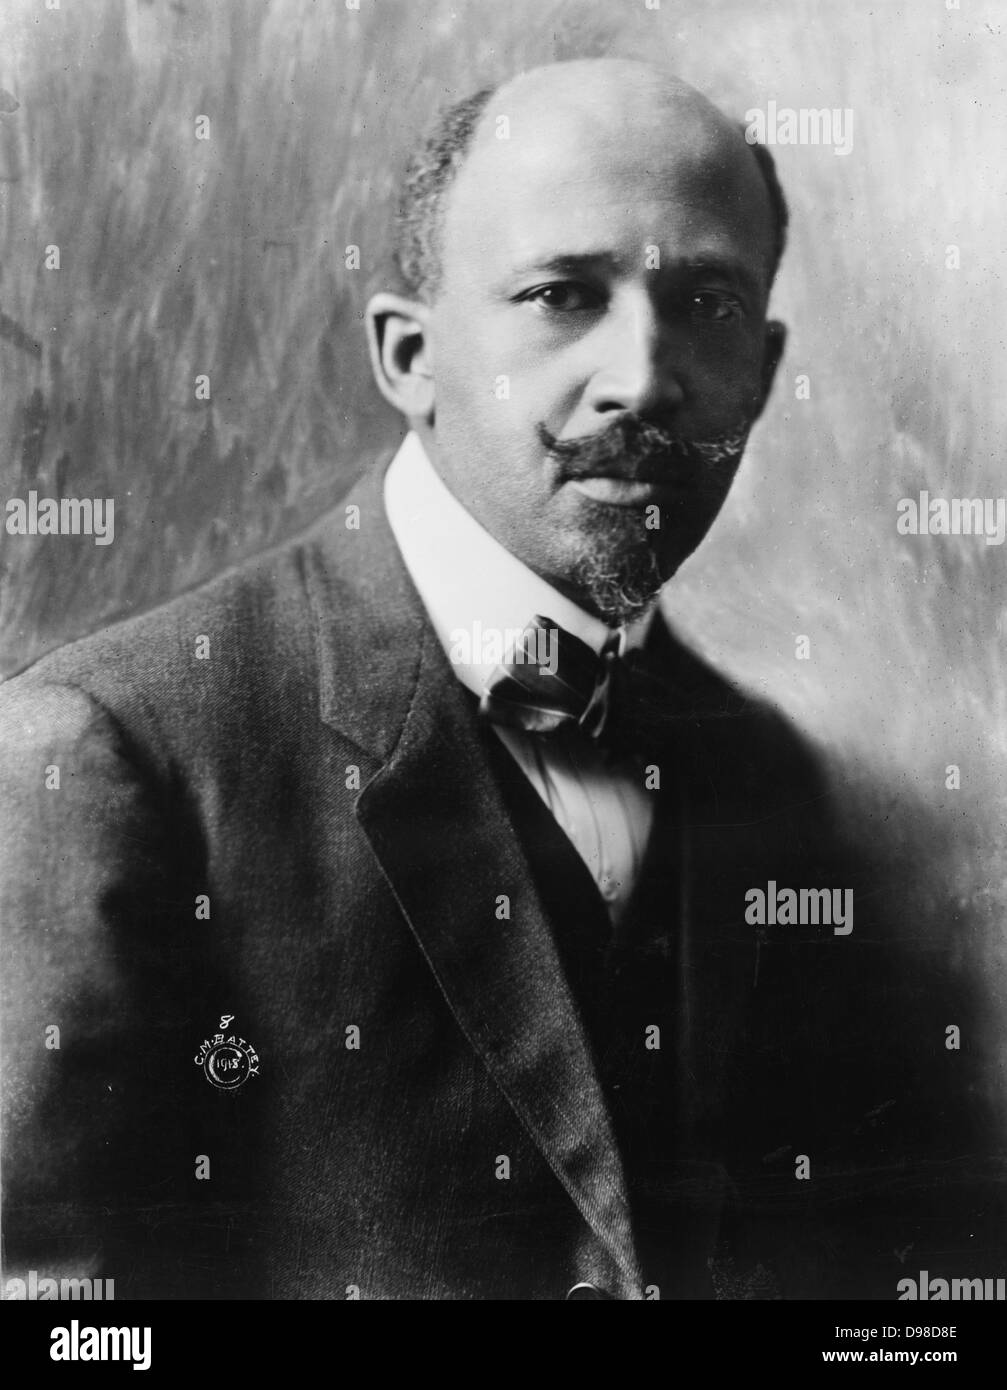 Afrikanische amerikanische Gelehrte William Edward Dubois (1868-1963), Schriftsteller und Bürgerrechtler. Stockfoto